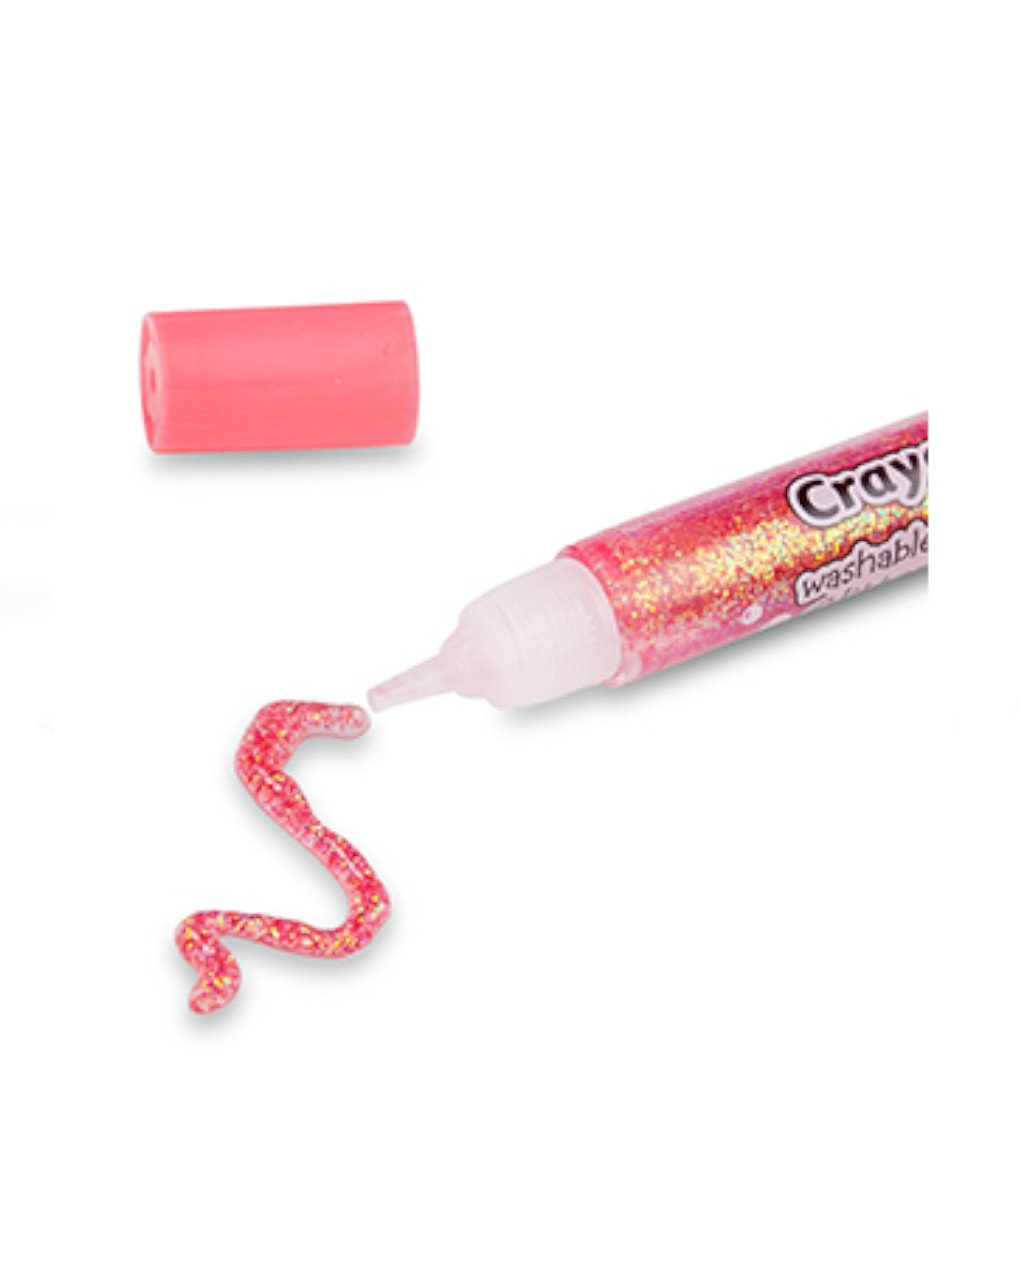 Colle glitter lavabili - confezione da 8 pezzi - crayola pastel - Crayola